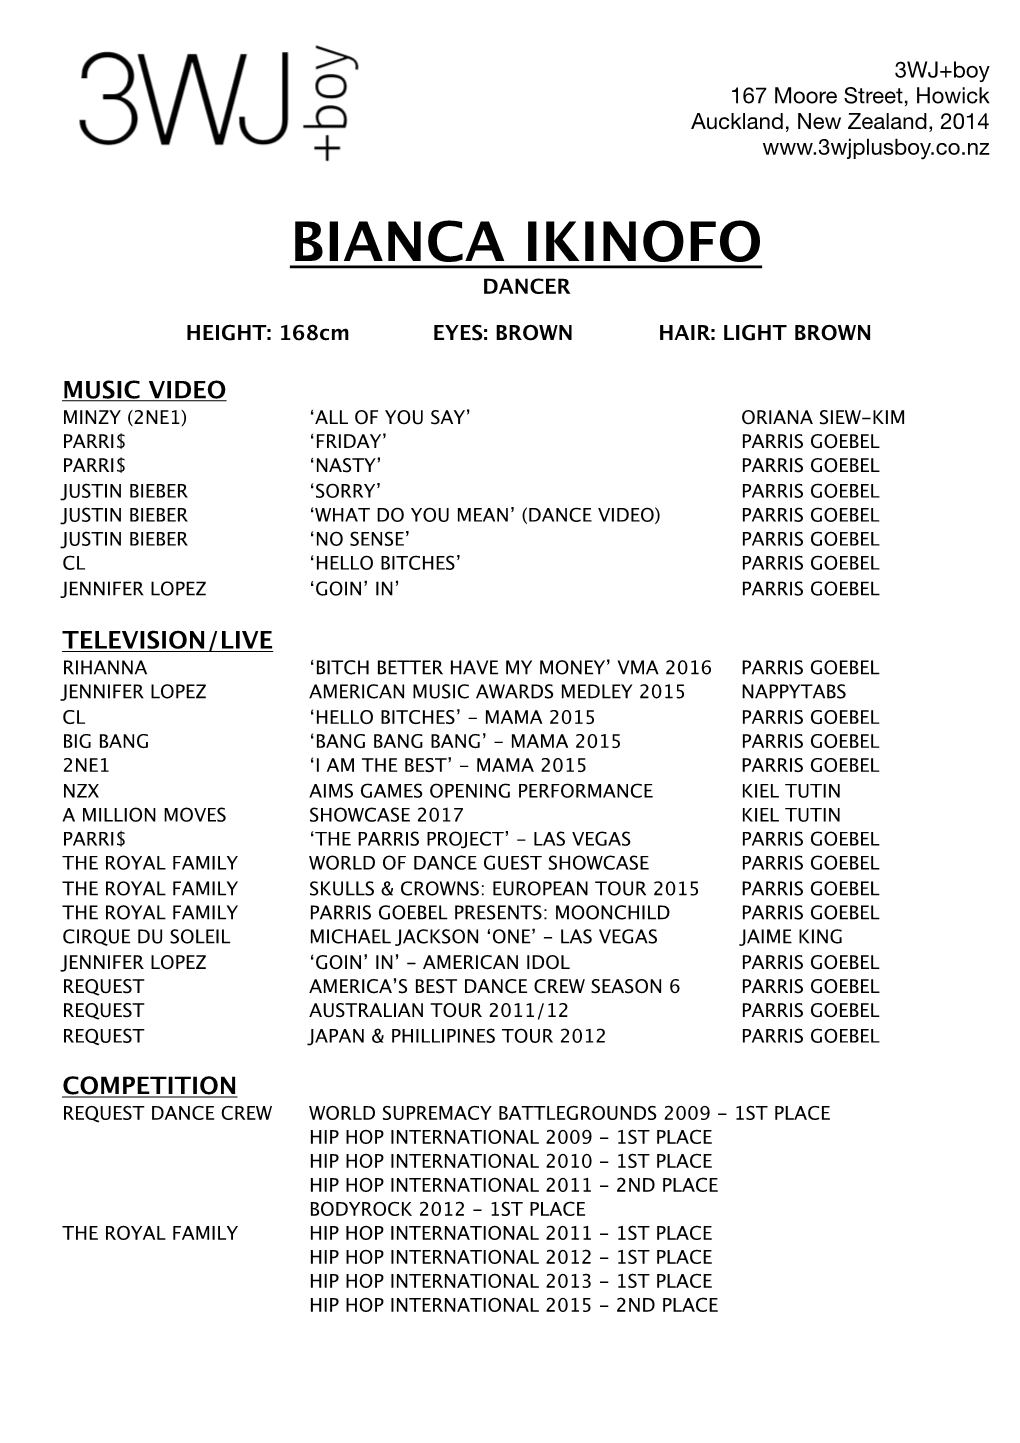 Bianca Ikinofo Dancer